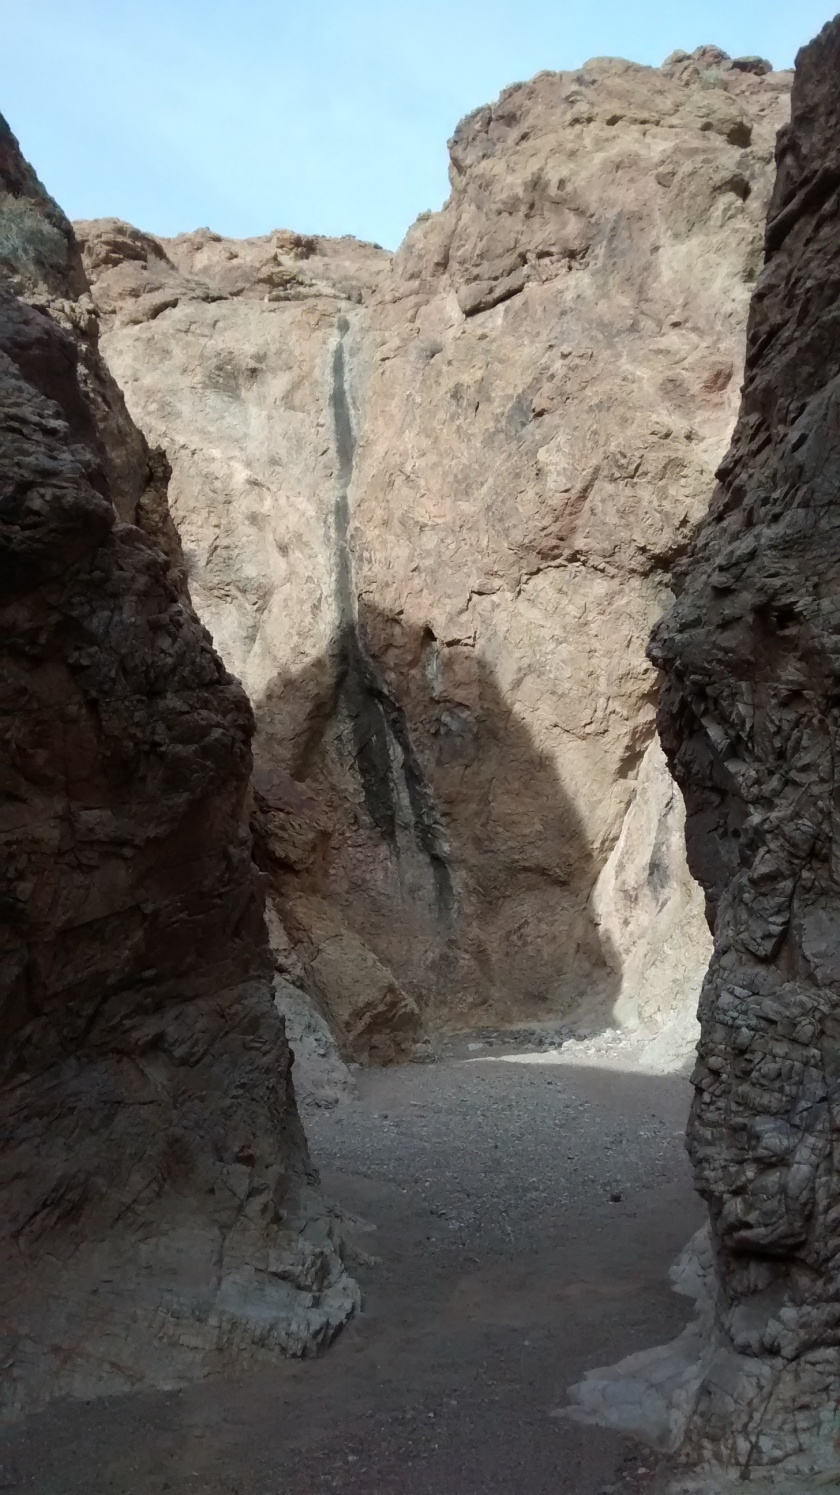 Through a small slot canyon.